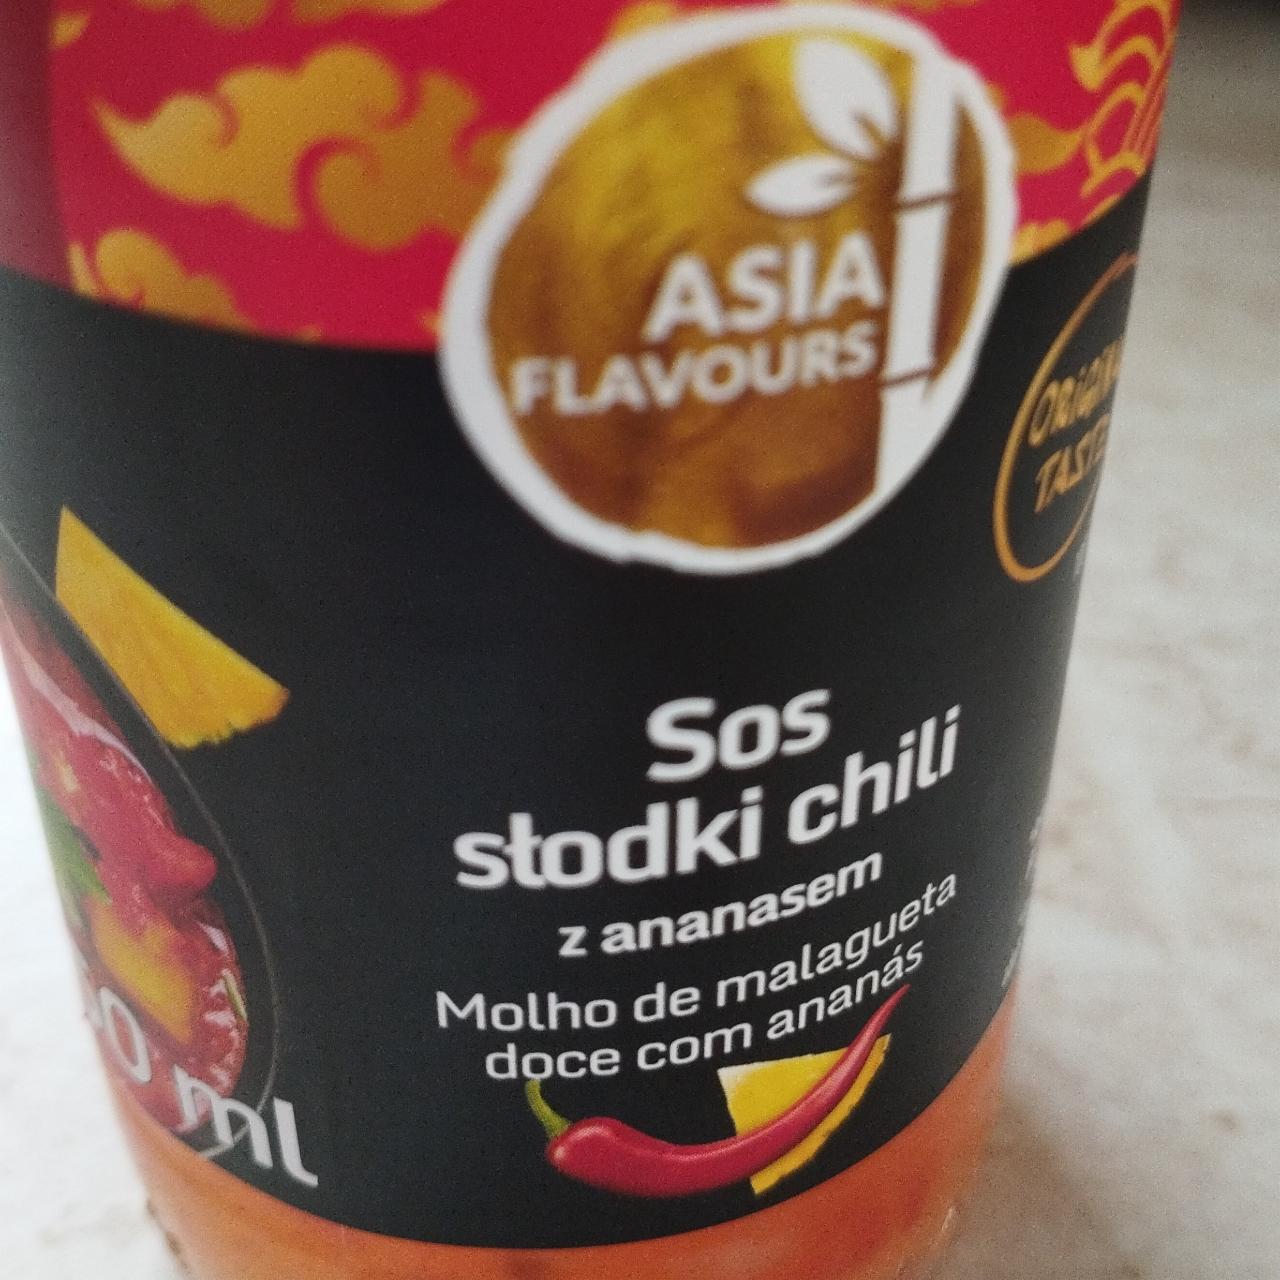 Zdjęcia - Sos słodki chili z ananasem Asia Flavours